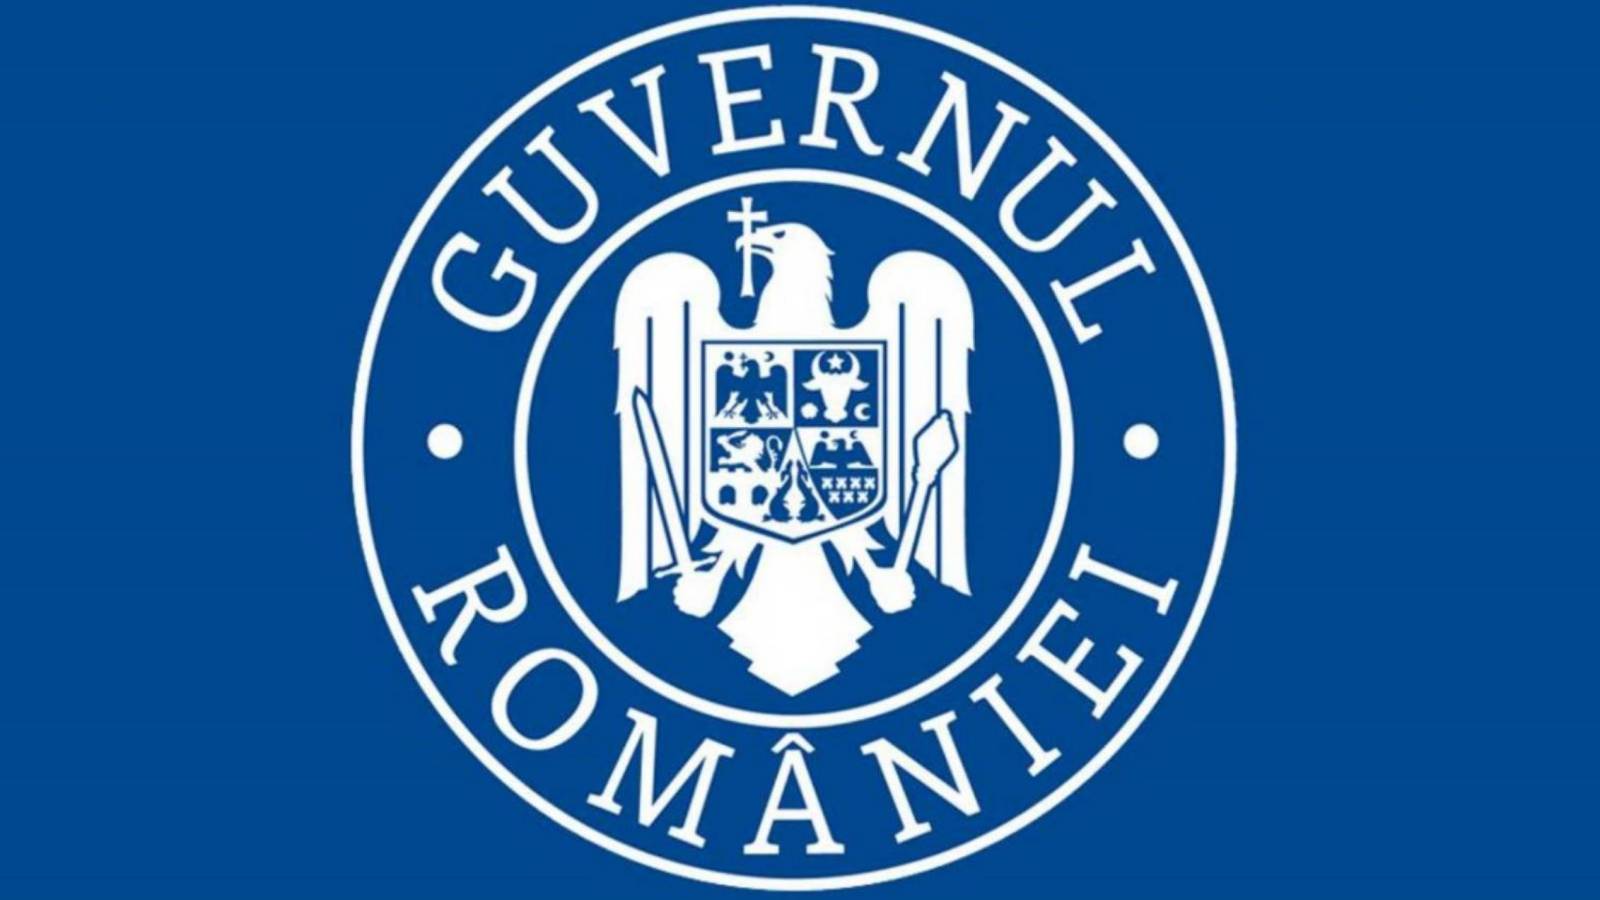 Le gouvernement roumain documente la quarantaine partielle